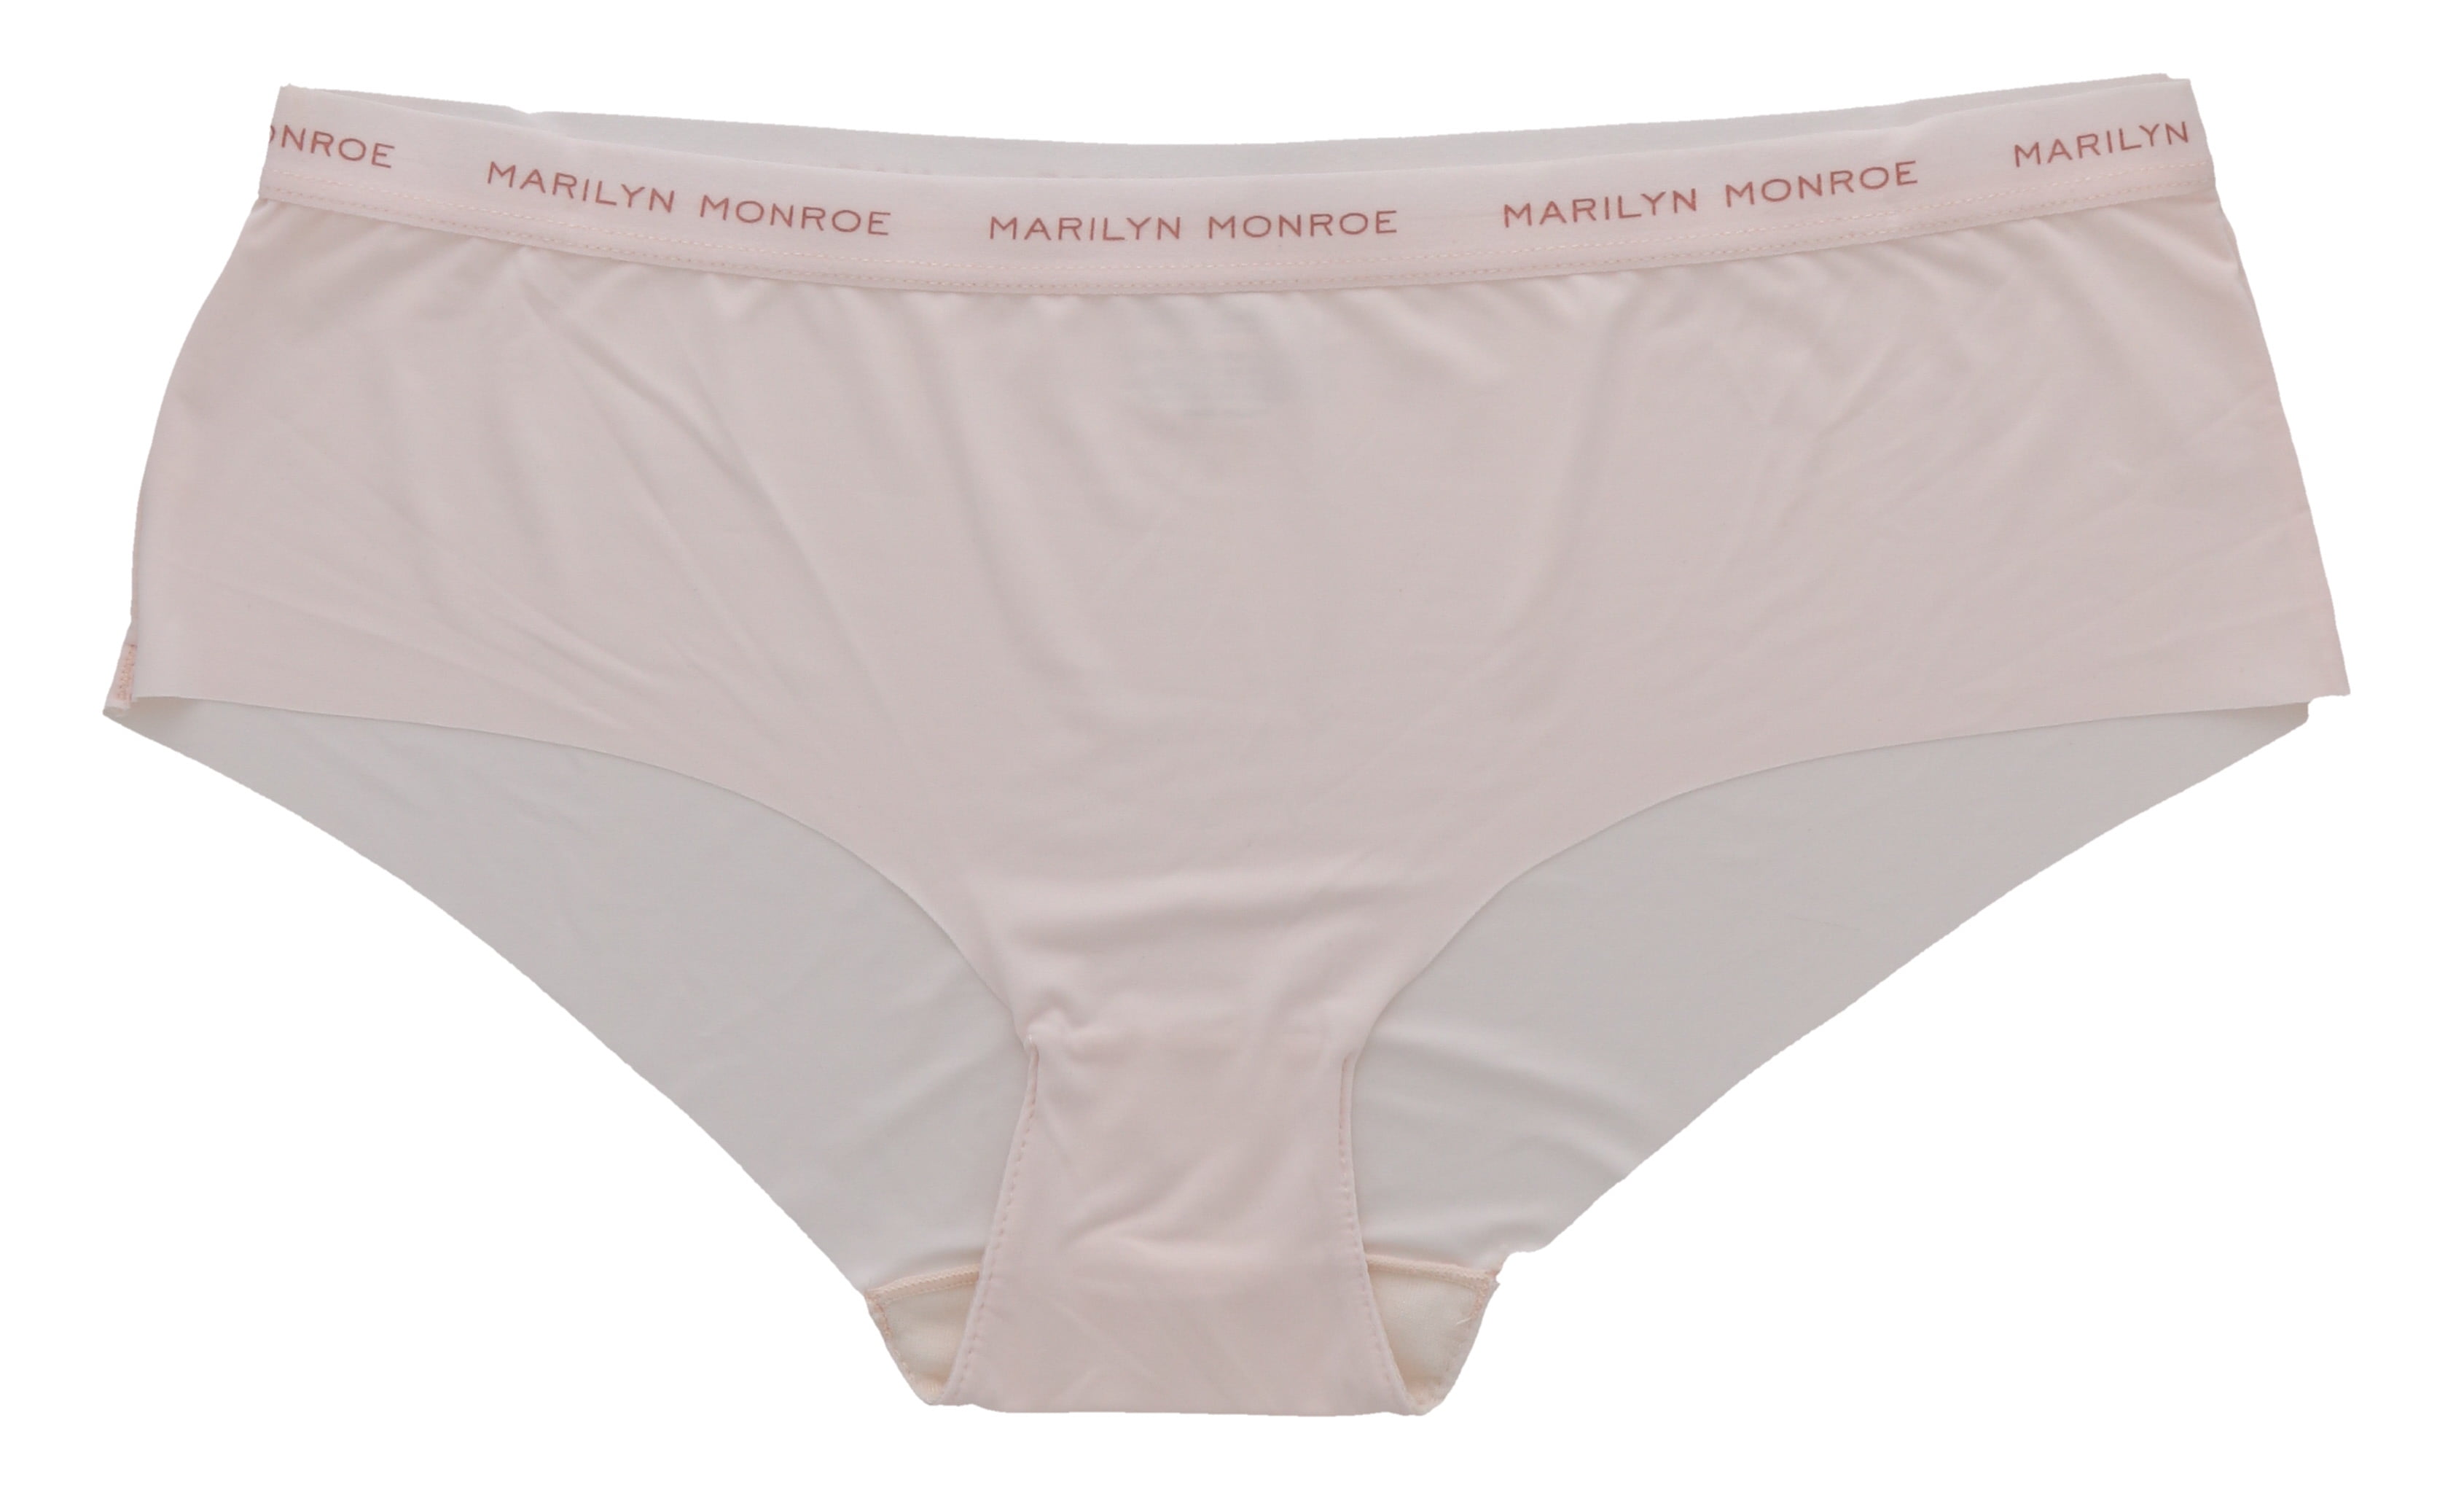 Marilyn Monroe Pale Peach Pink Thong Panty Underwear Sissy Knickers 6/Medium